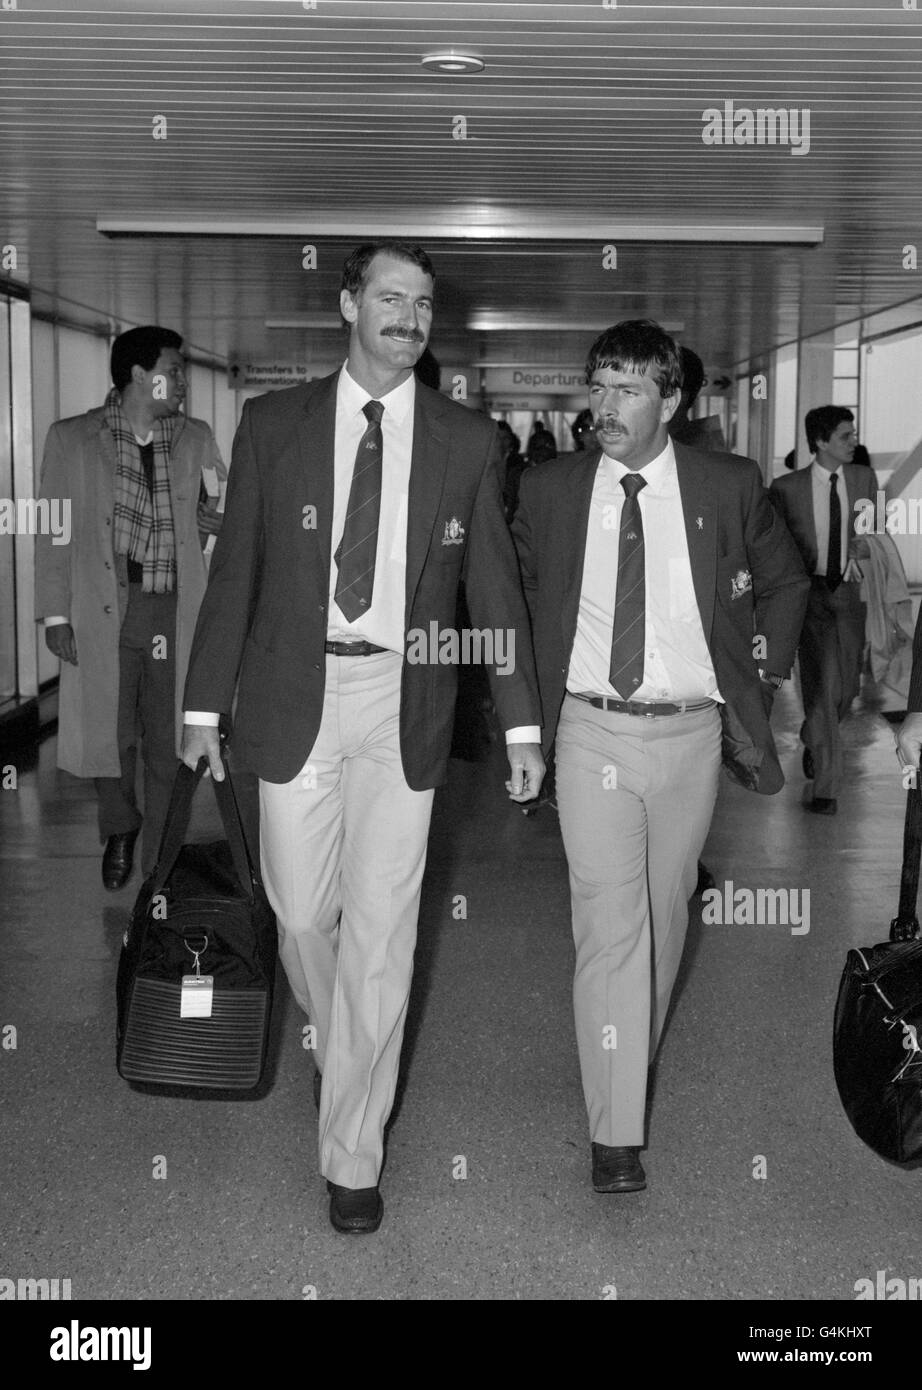 Der australische Schnellbowler Dennis Lillee (l) und der Flechtmeister Rodney Marsh (r) kommen am Flughafen Heathrow an, der Rest des australischen Teams ist bereit für den Start der Prudential Cricket World Cup. Stockfoto